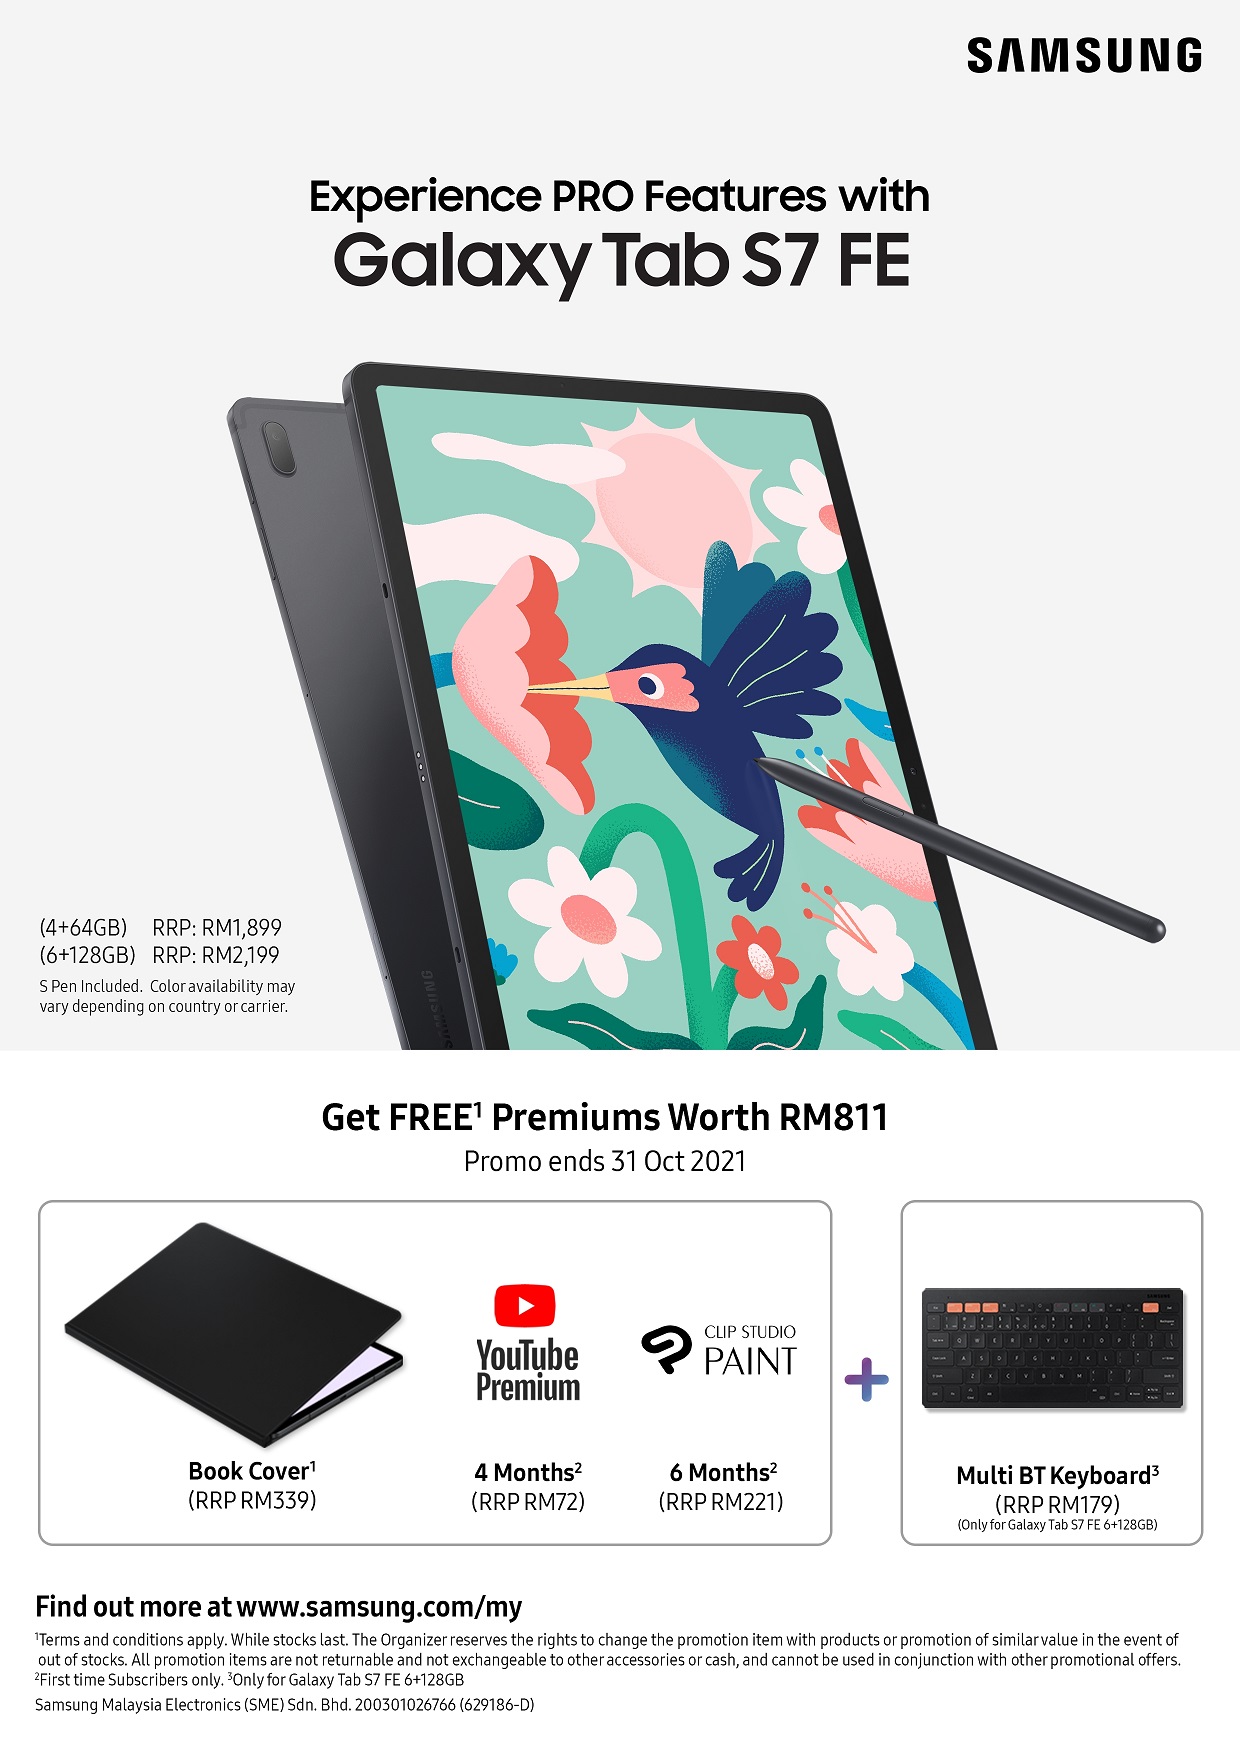 Promosi pembelian Galaxy Tab S7 FE